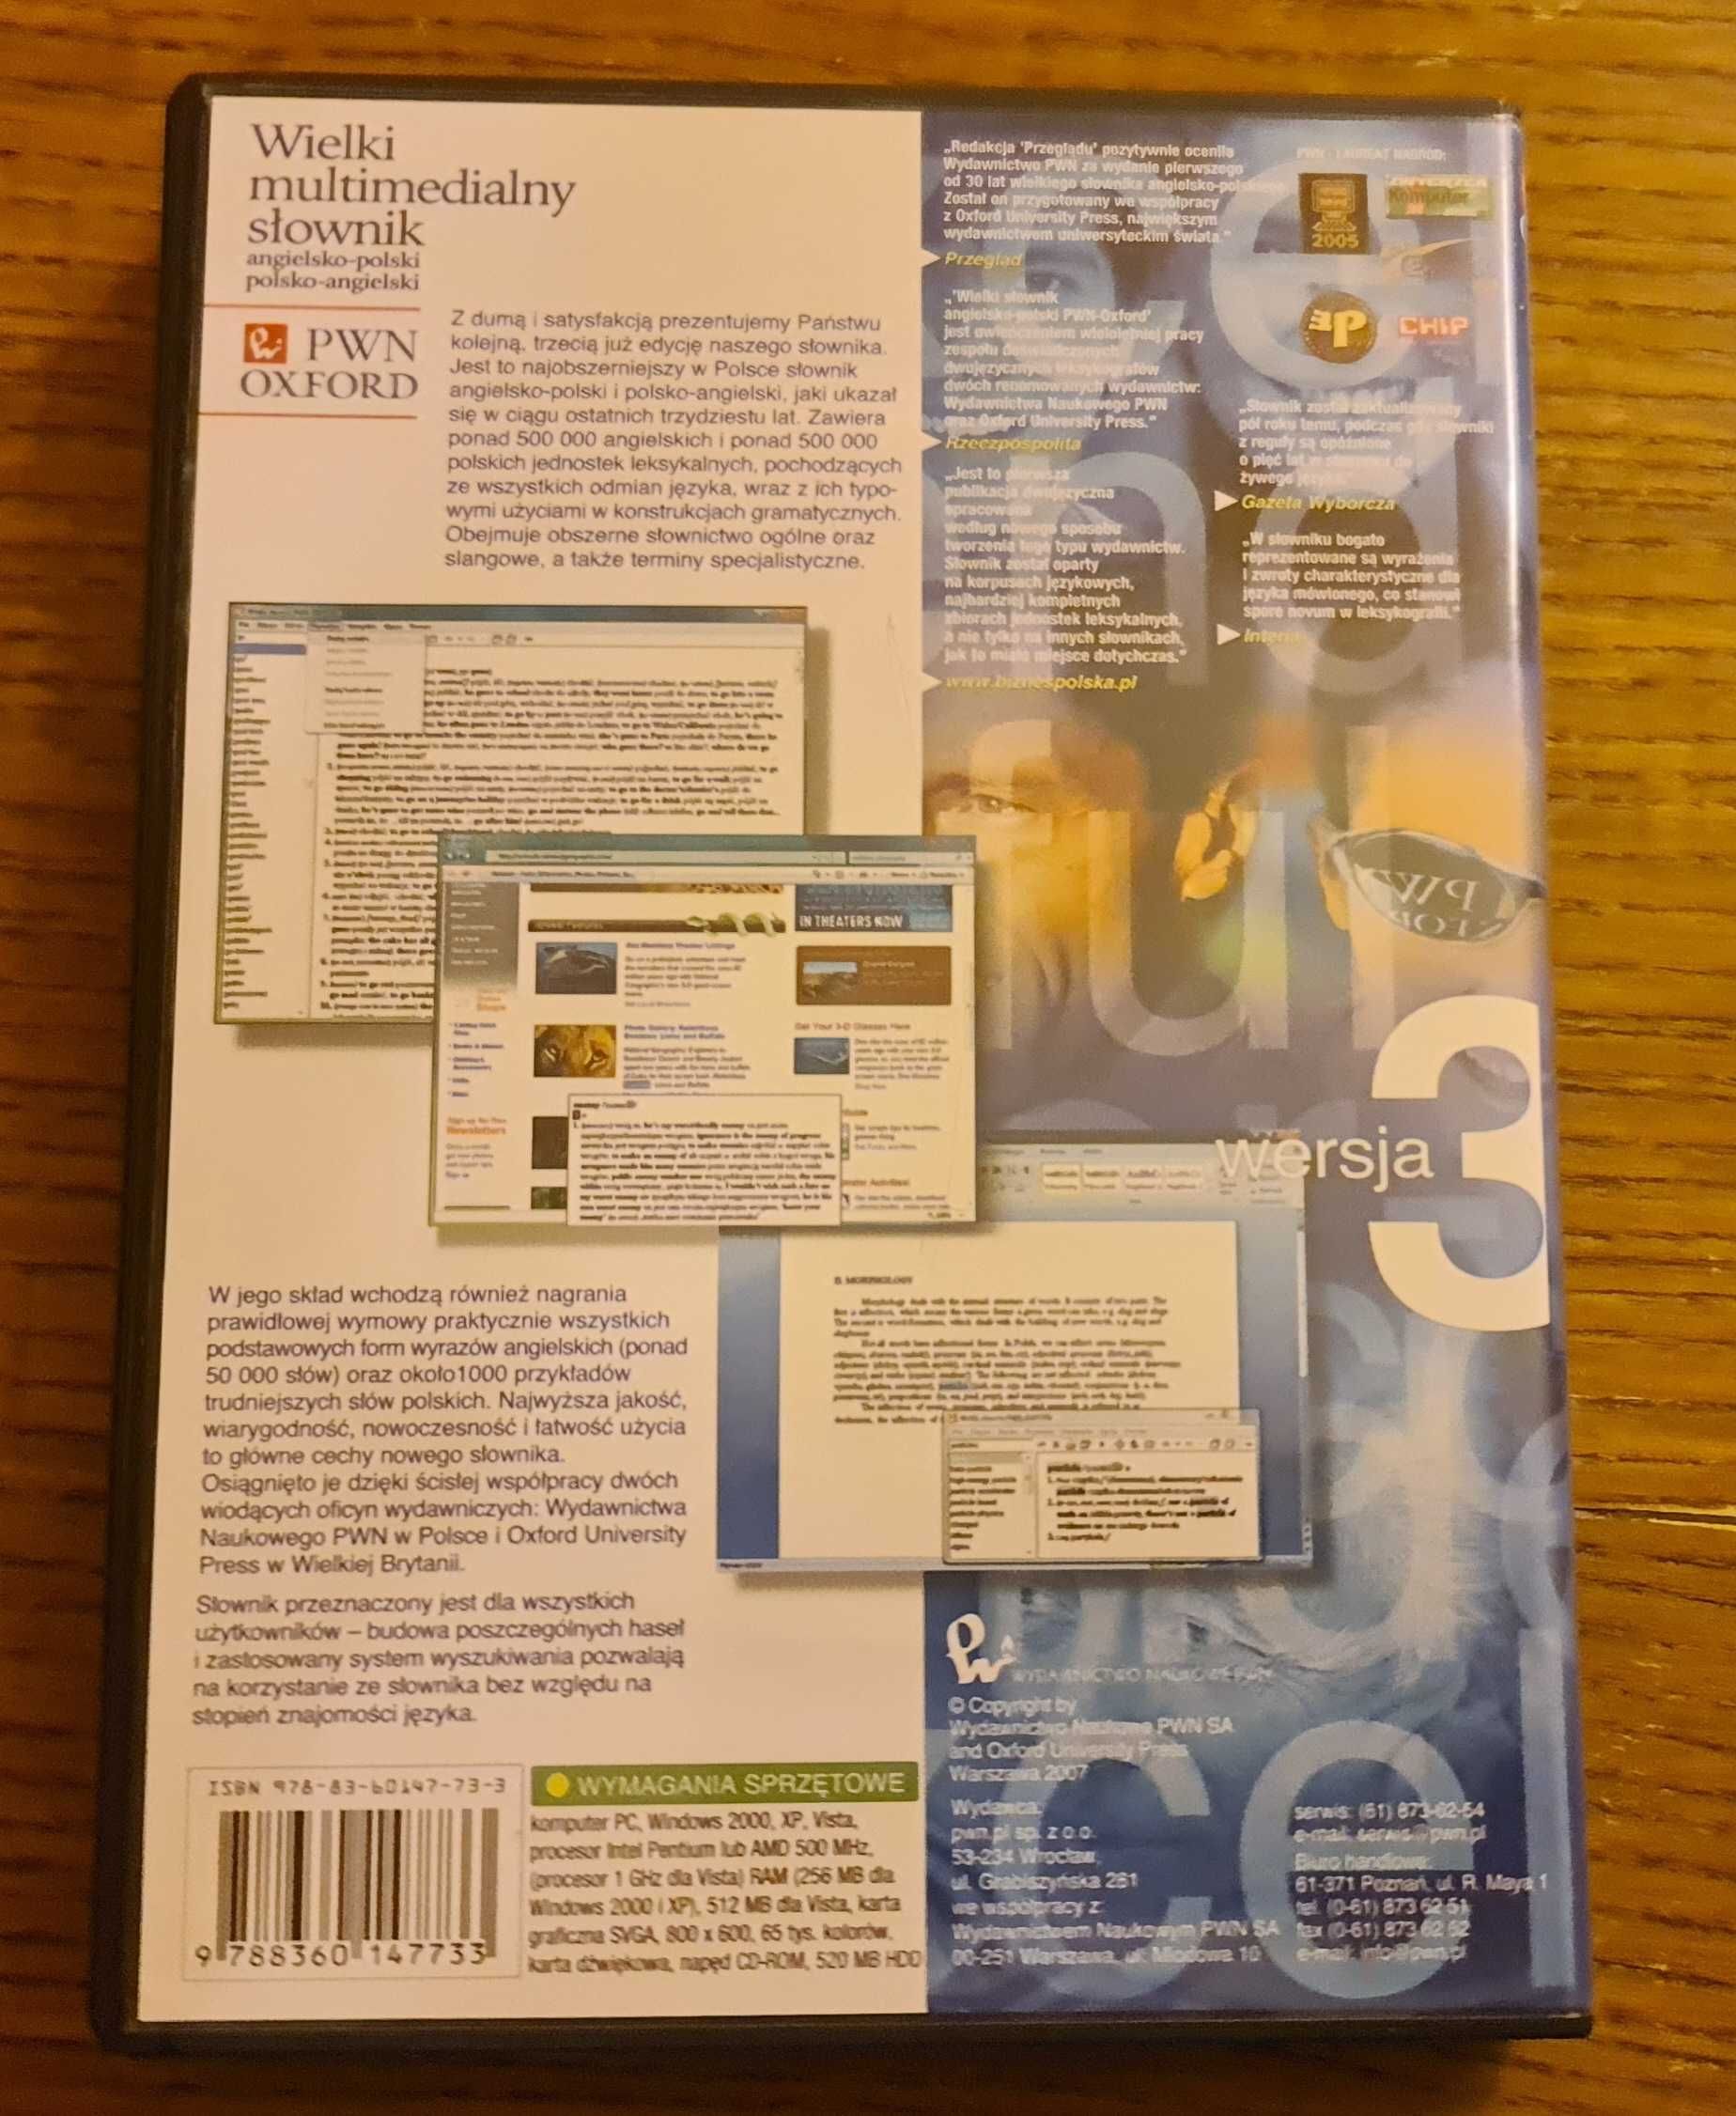 Wielki multimedialny słownik polsko-angielski PWN OXFORD wersja 3.0 CD